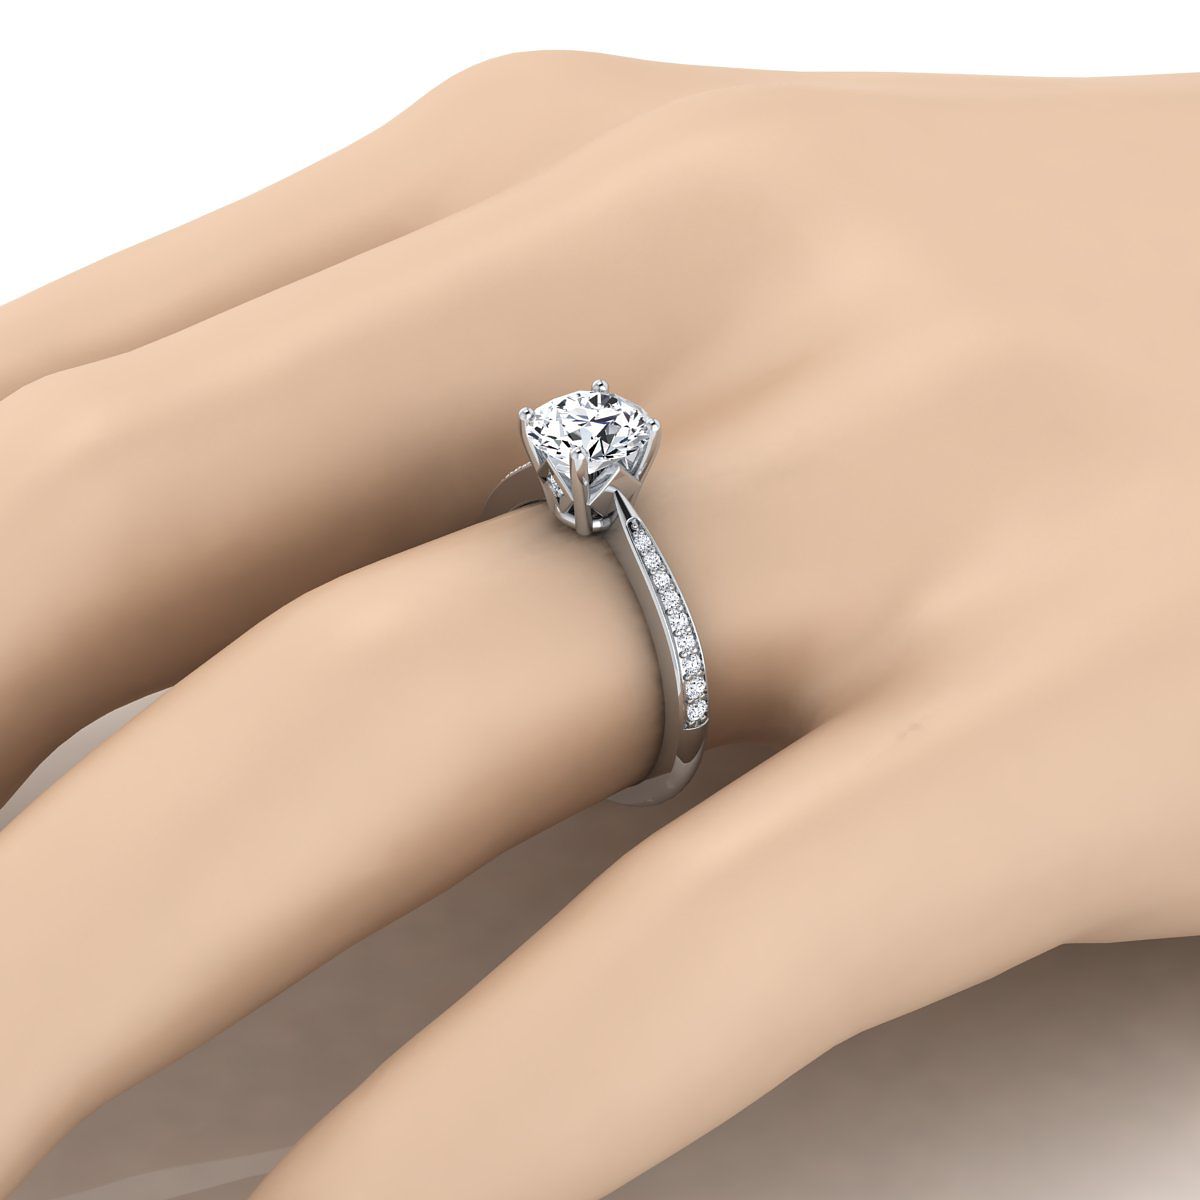 Platinum Round Brilliant Aquamarine Tapered Pave Diamond Engagement Ring -1/8ctw